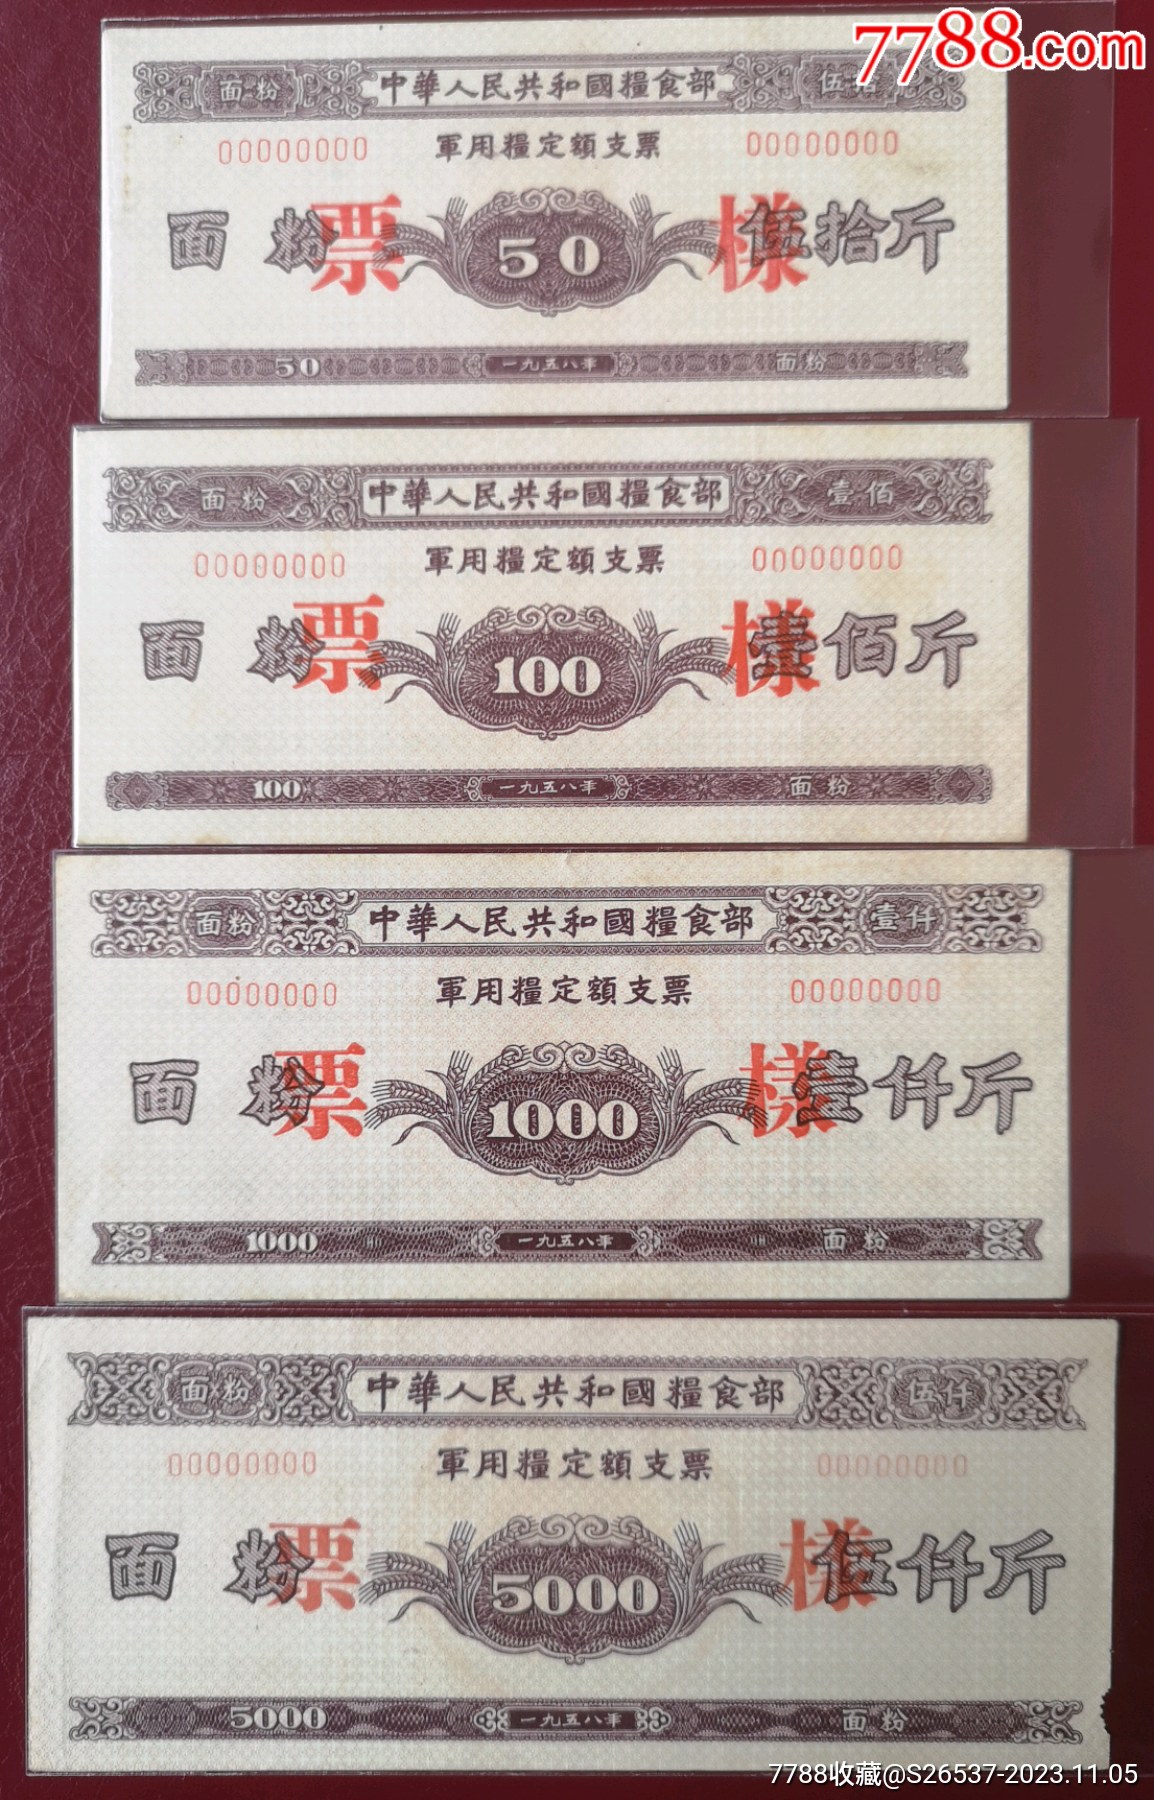 1958中華人民共和國糧食部*用糧定額支票《樣張》16全_價格14318元_第2張_